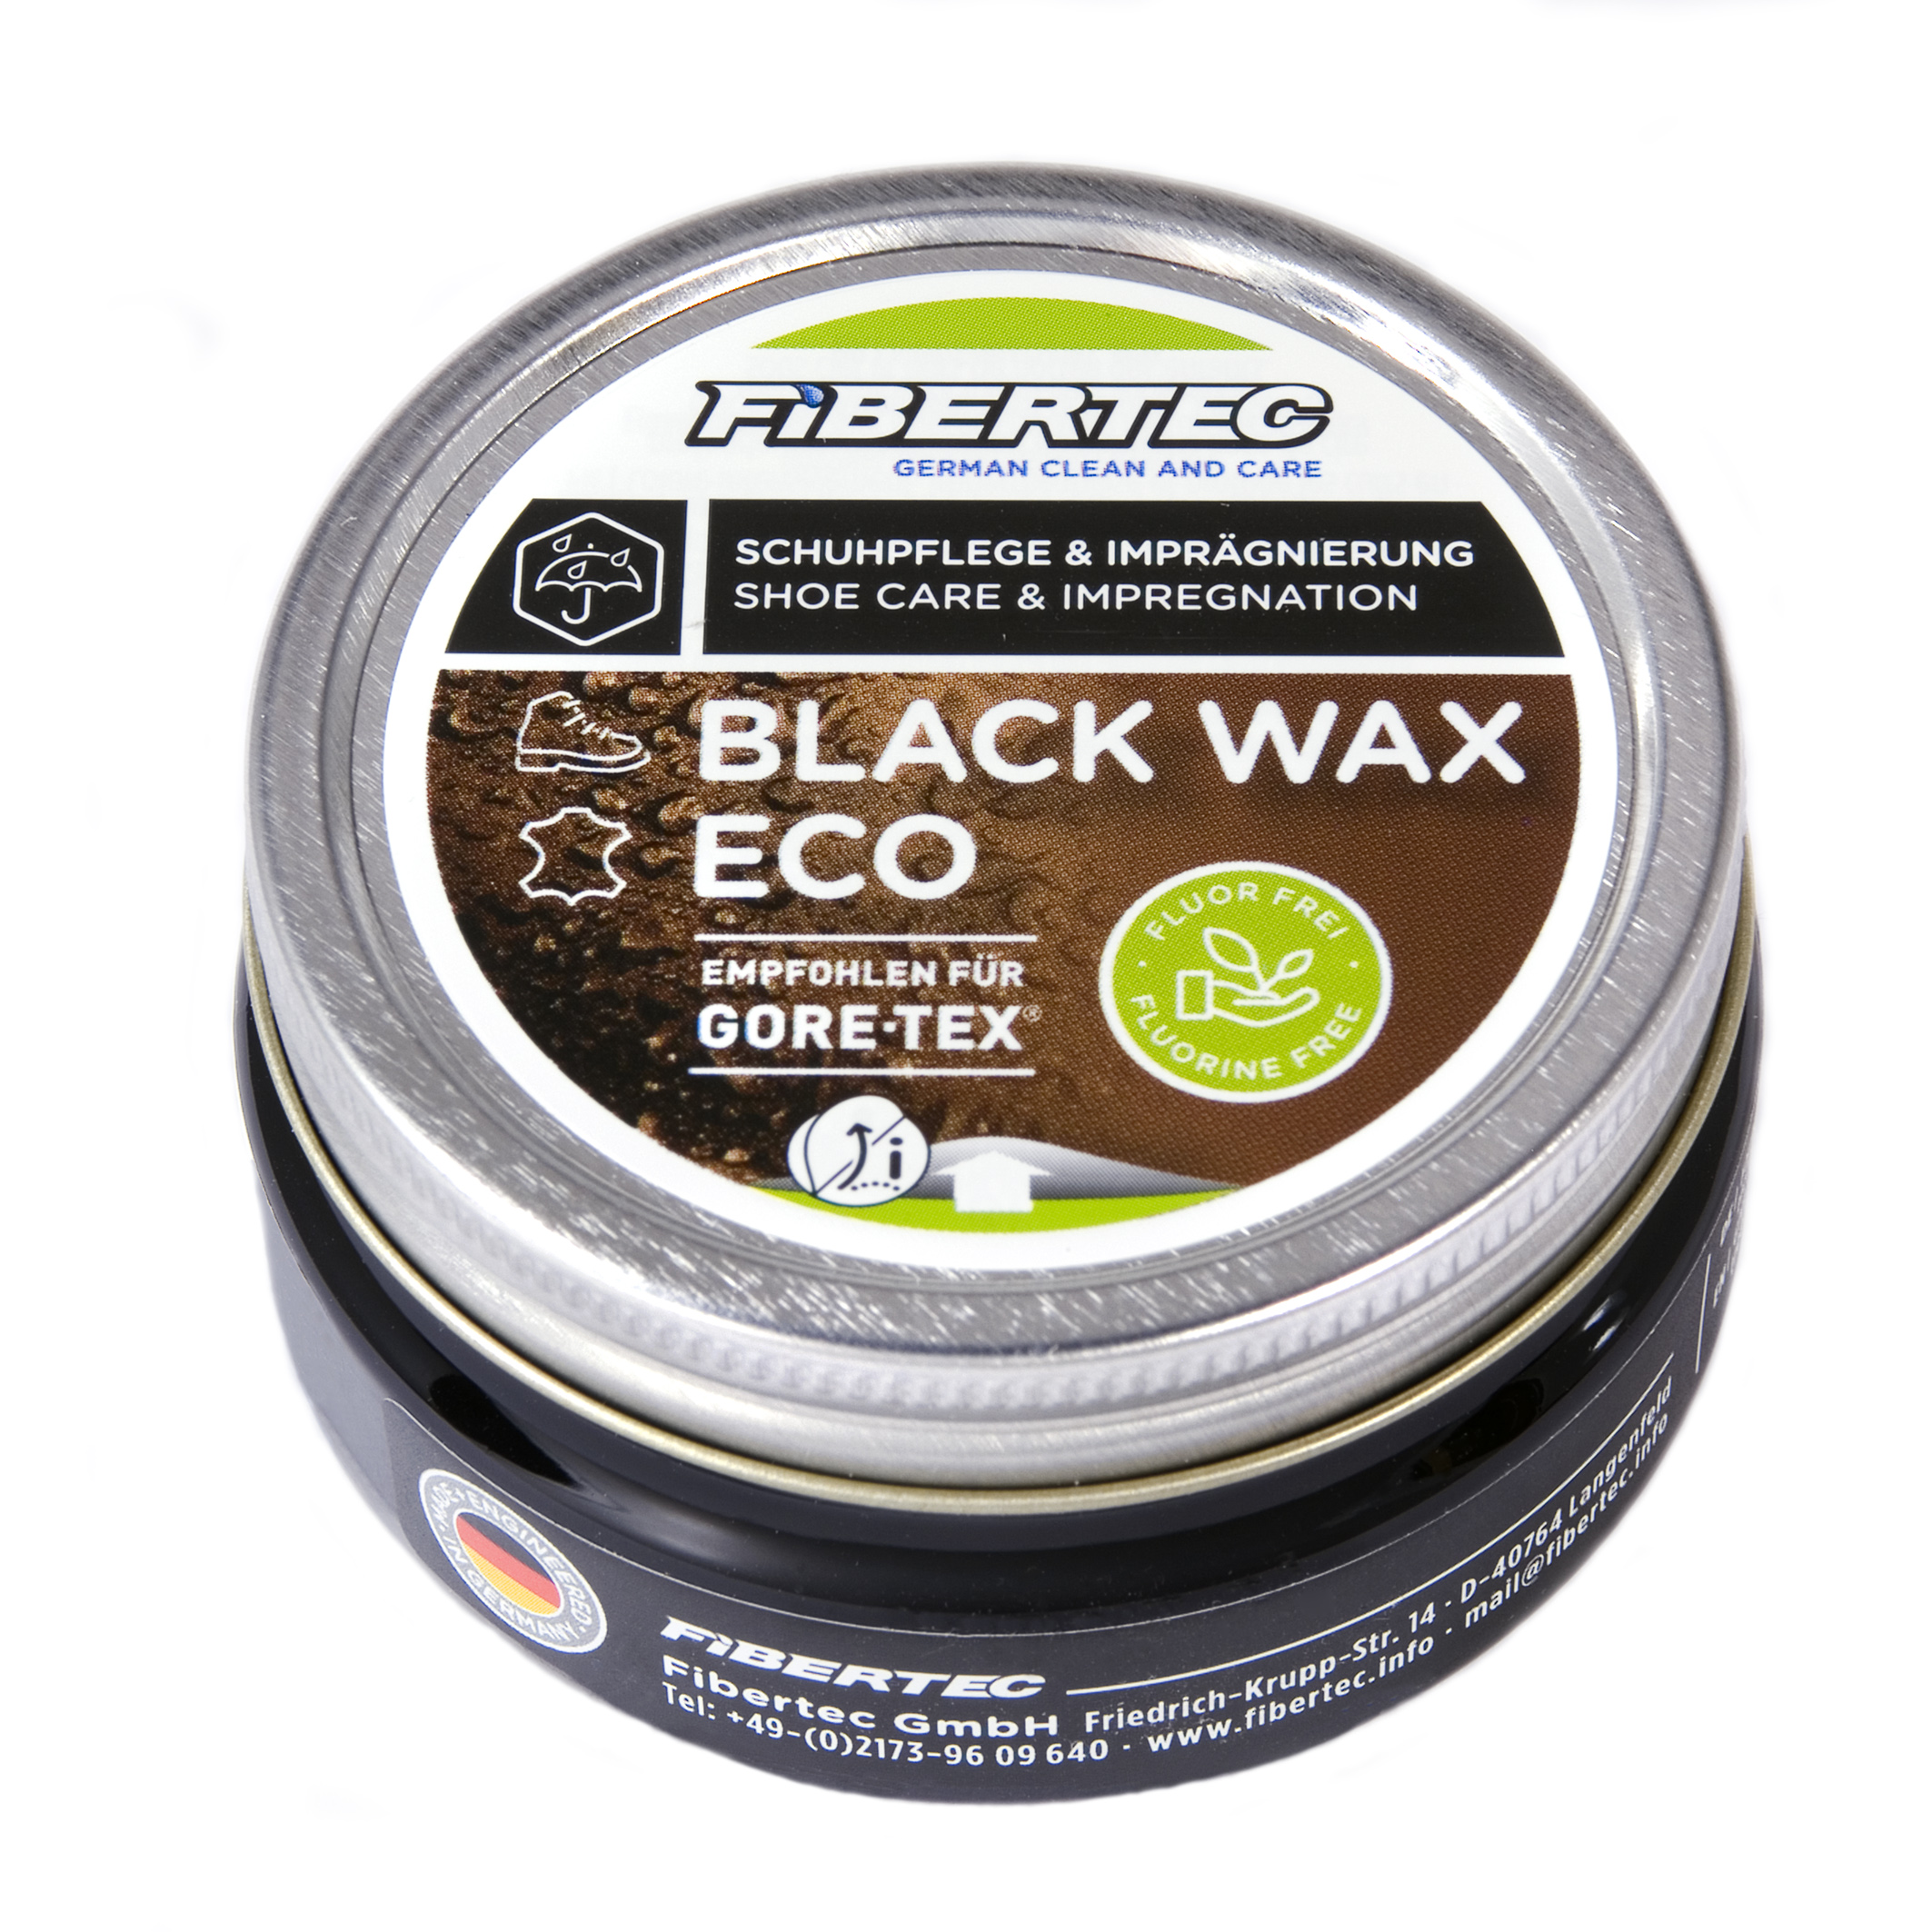 Black Wax Eco